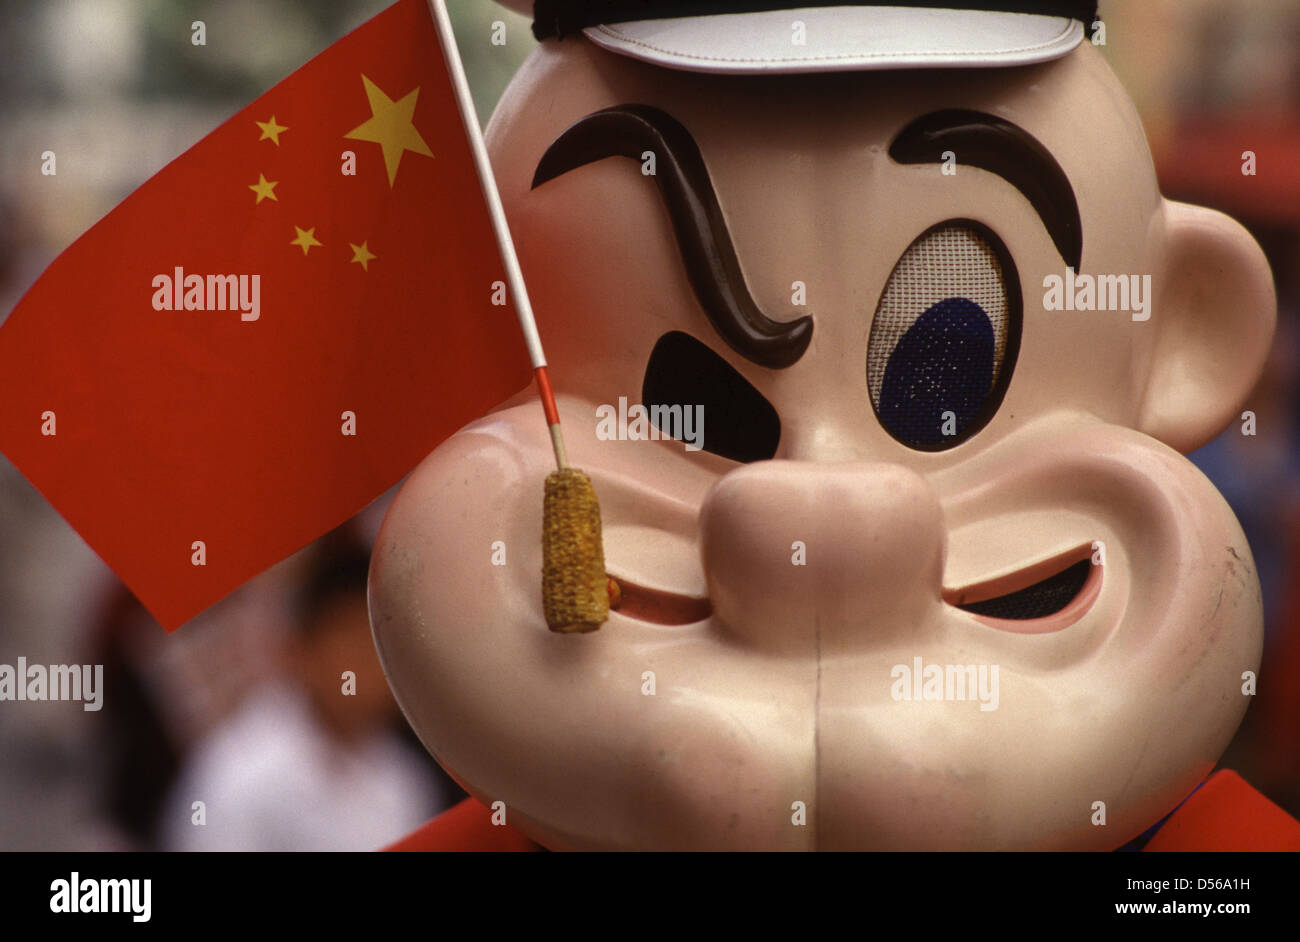 Flagge von China mit Popeye der Seemann Figur in Peking China Stockfoto